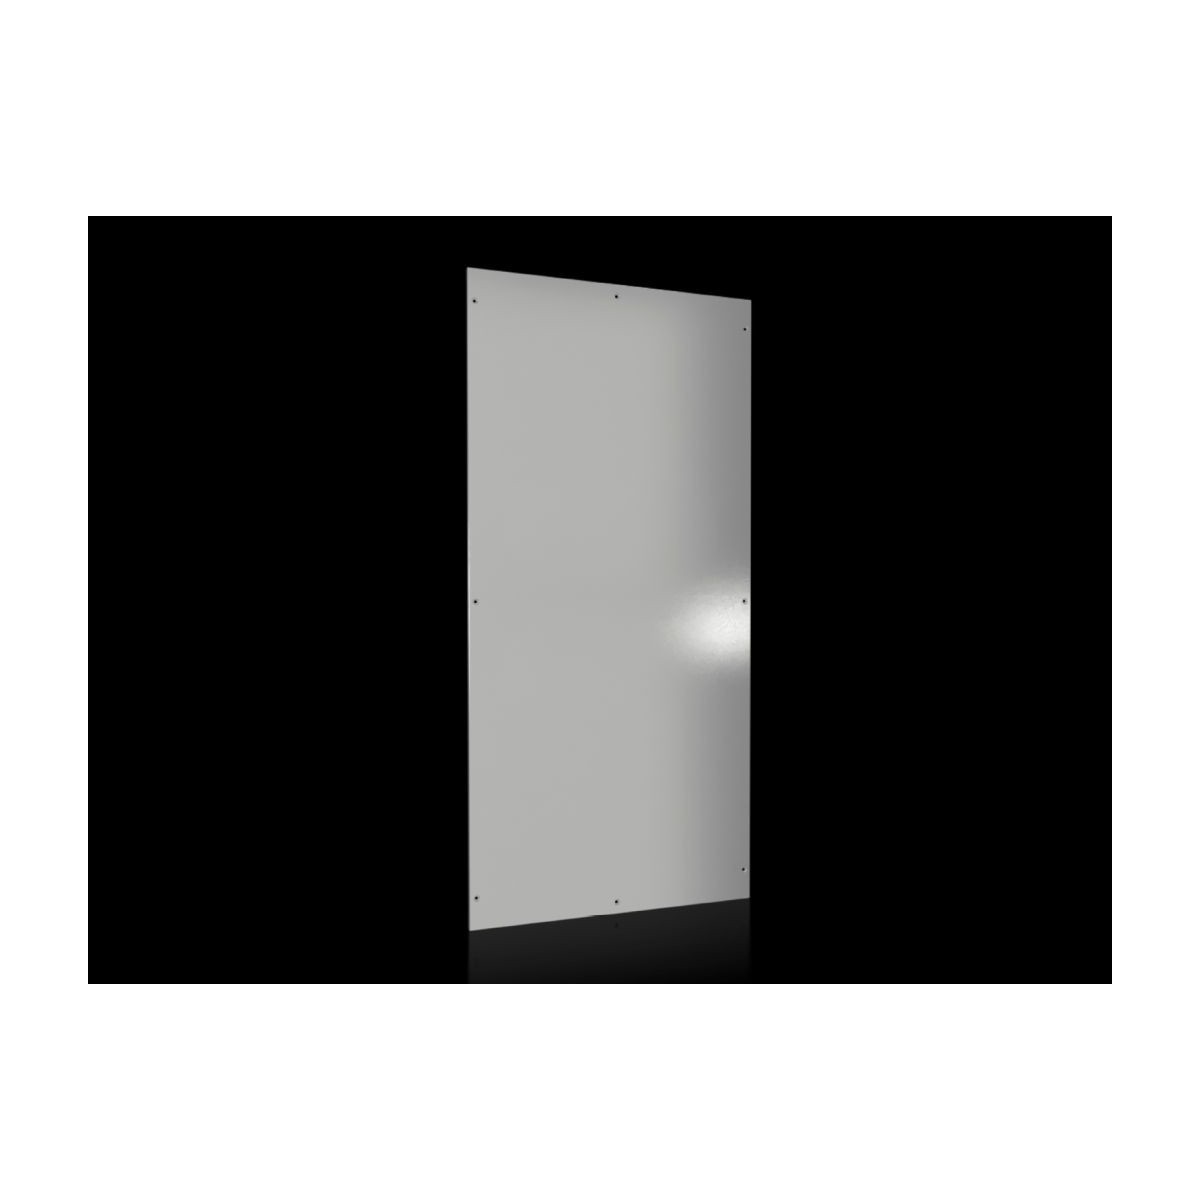 Rittal 8100.245 - Side panel - Gray - Steel - IP55 - UL - C-UL - 1.5 mm